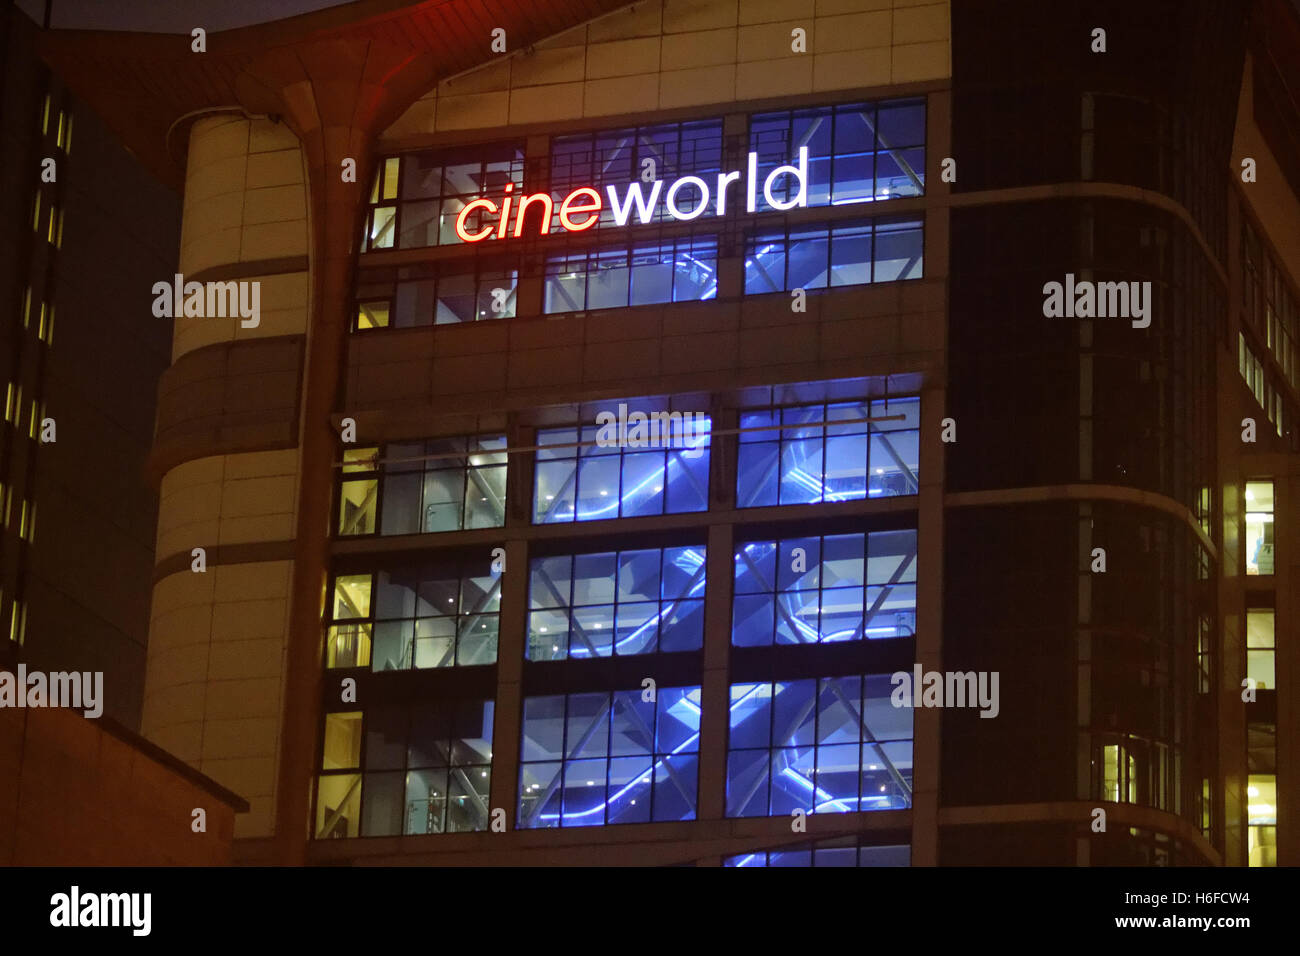 Cineworld Glasgow a 203 piedi (62 metri), il palazzo è attualmente il più alto il cinema in tutto il mondo Foto Stock